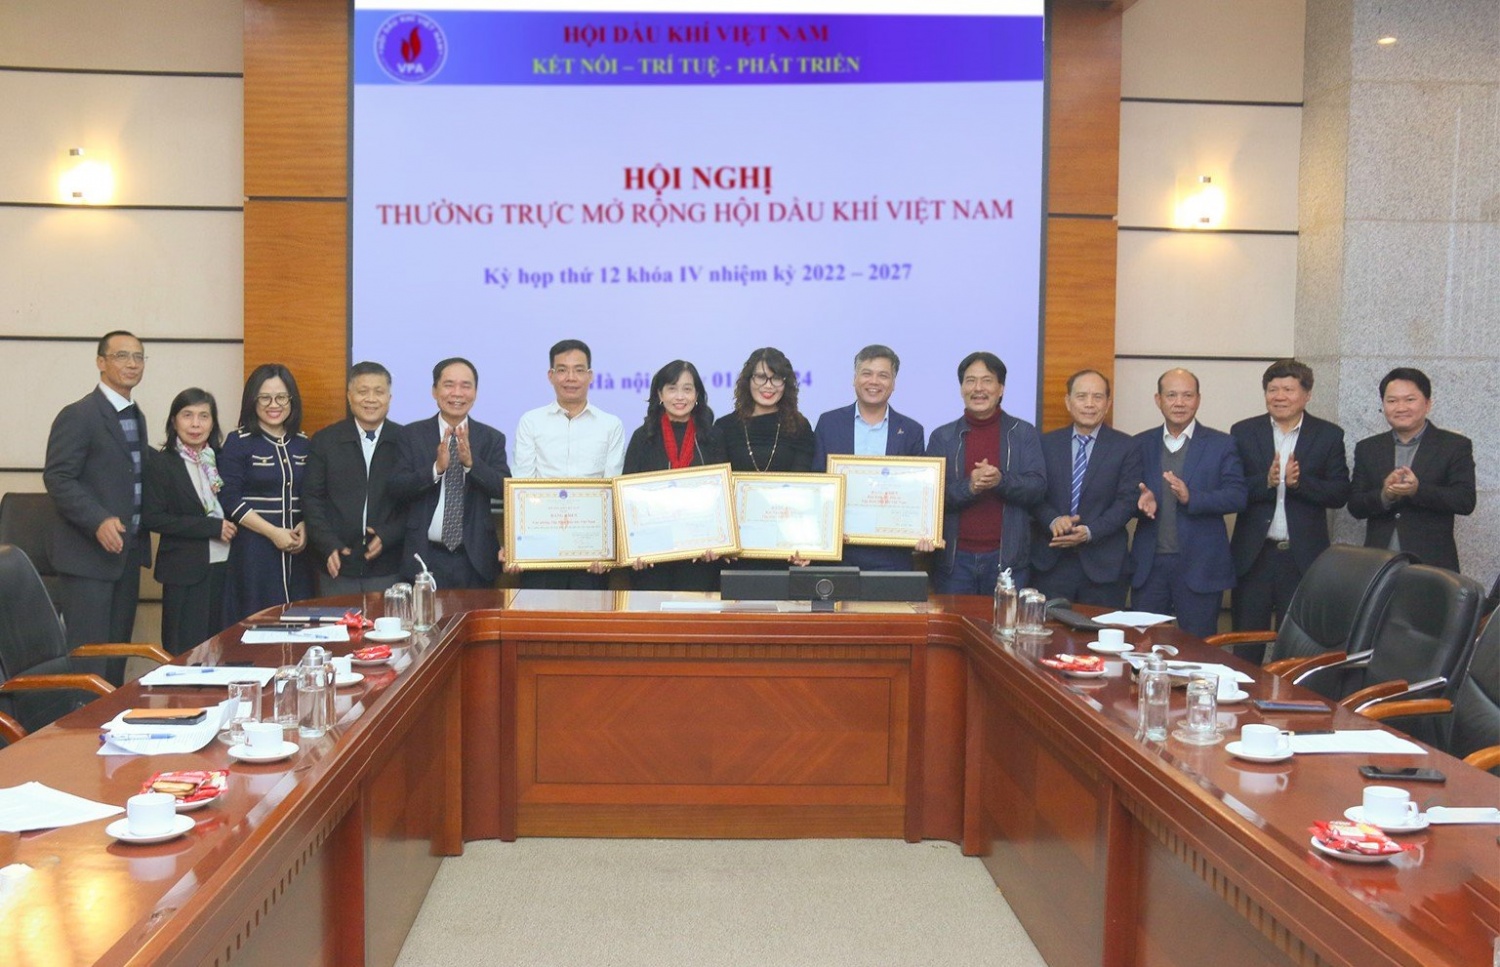 Hội Dầu khí Việt Nam tổ chức Hội nghị thường trực mở rộng lần thứ 12, khóa IV”